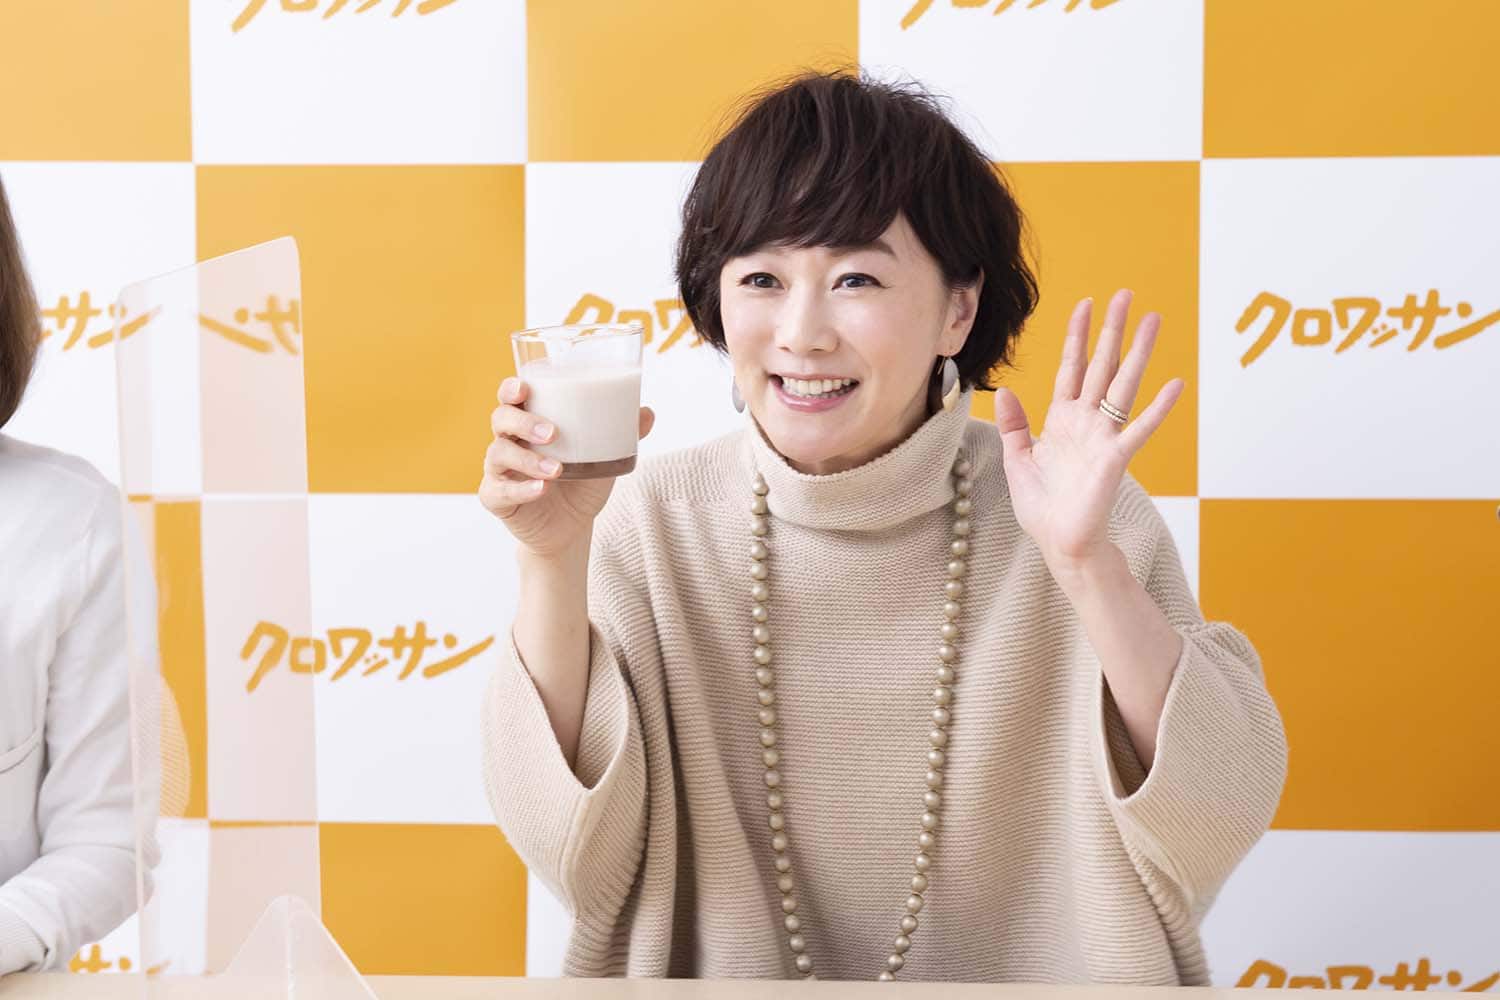 木佐彩子さんと振り返る、おいしく健やかな「アーモンドミルク」生活。